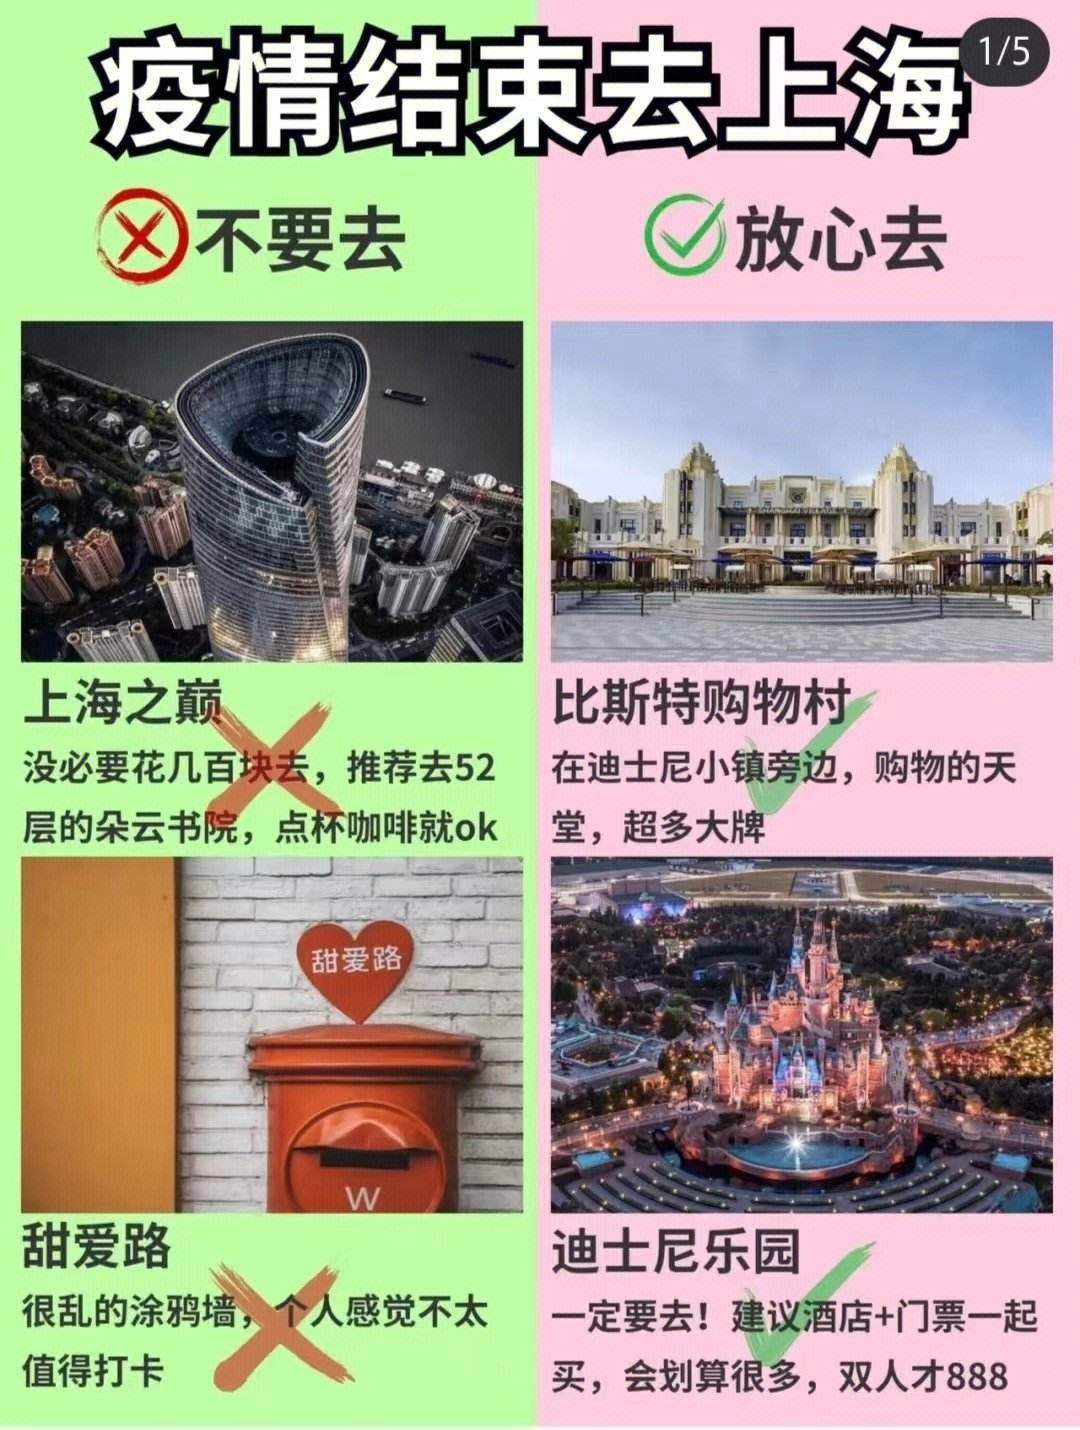 上海旅游指南(上海旅游指南手册)